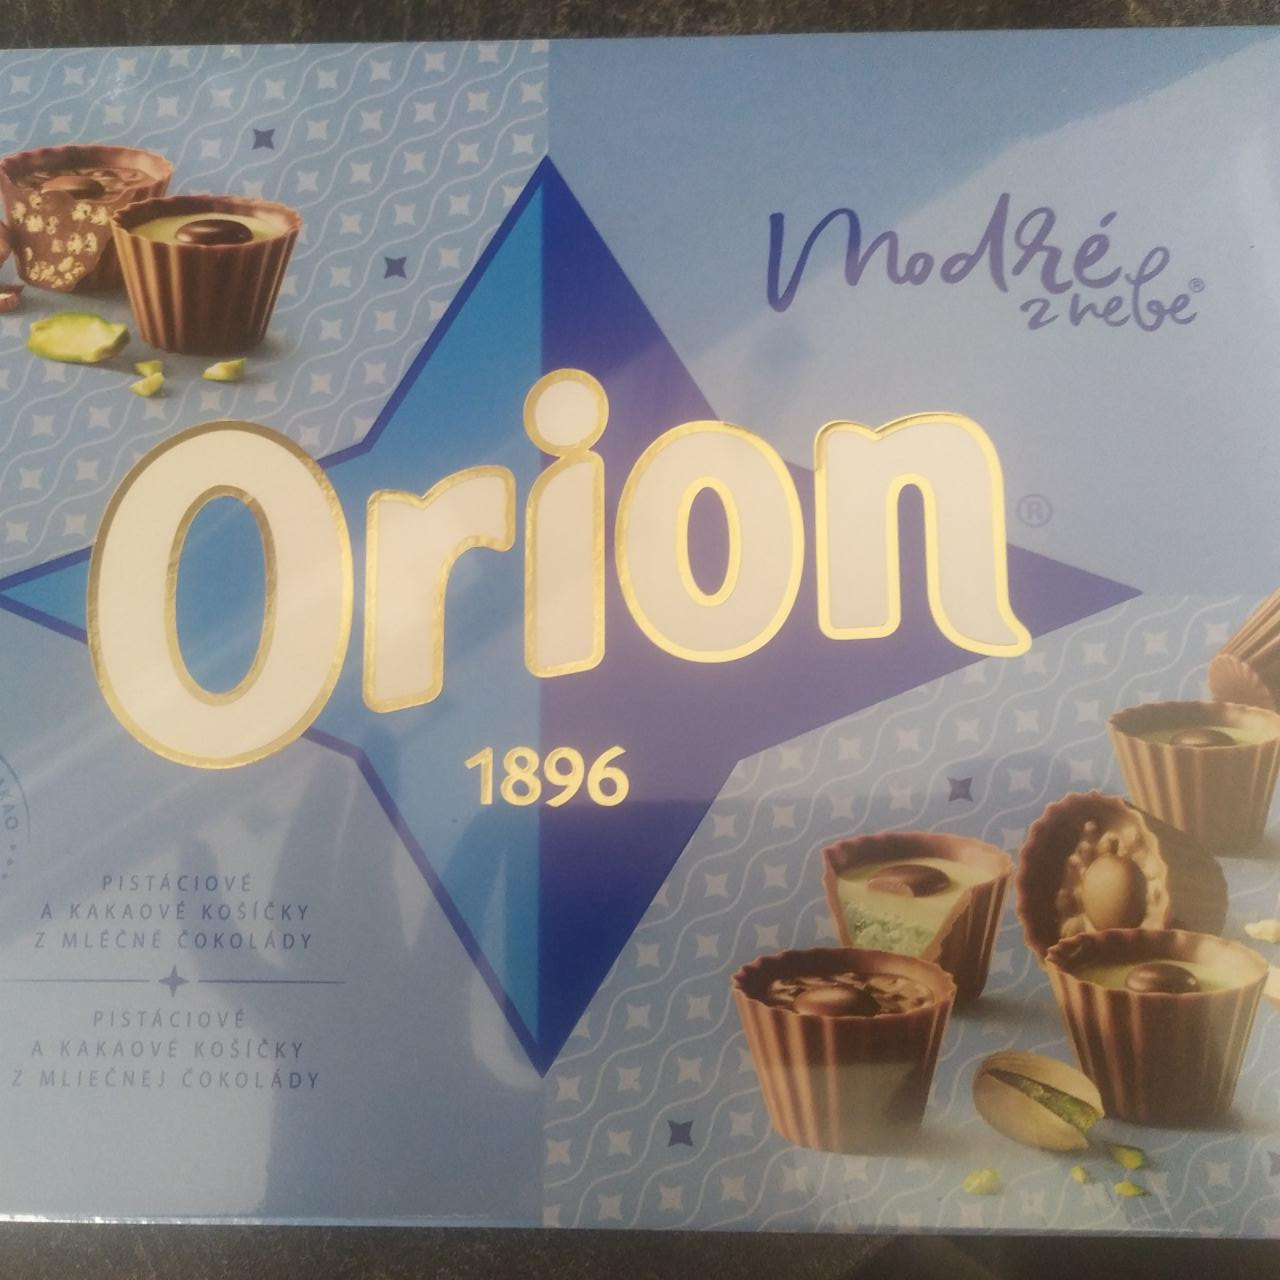 Fotografie - Modré z nebe pistáciové a kakaové košíčky z mléčné čokolády Orion